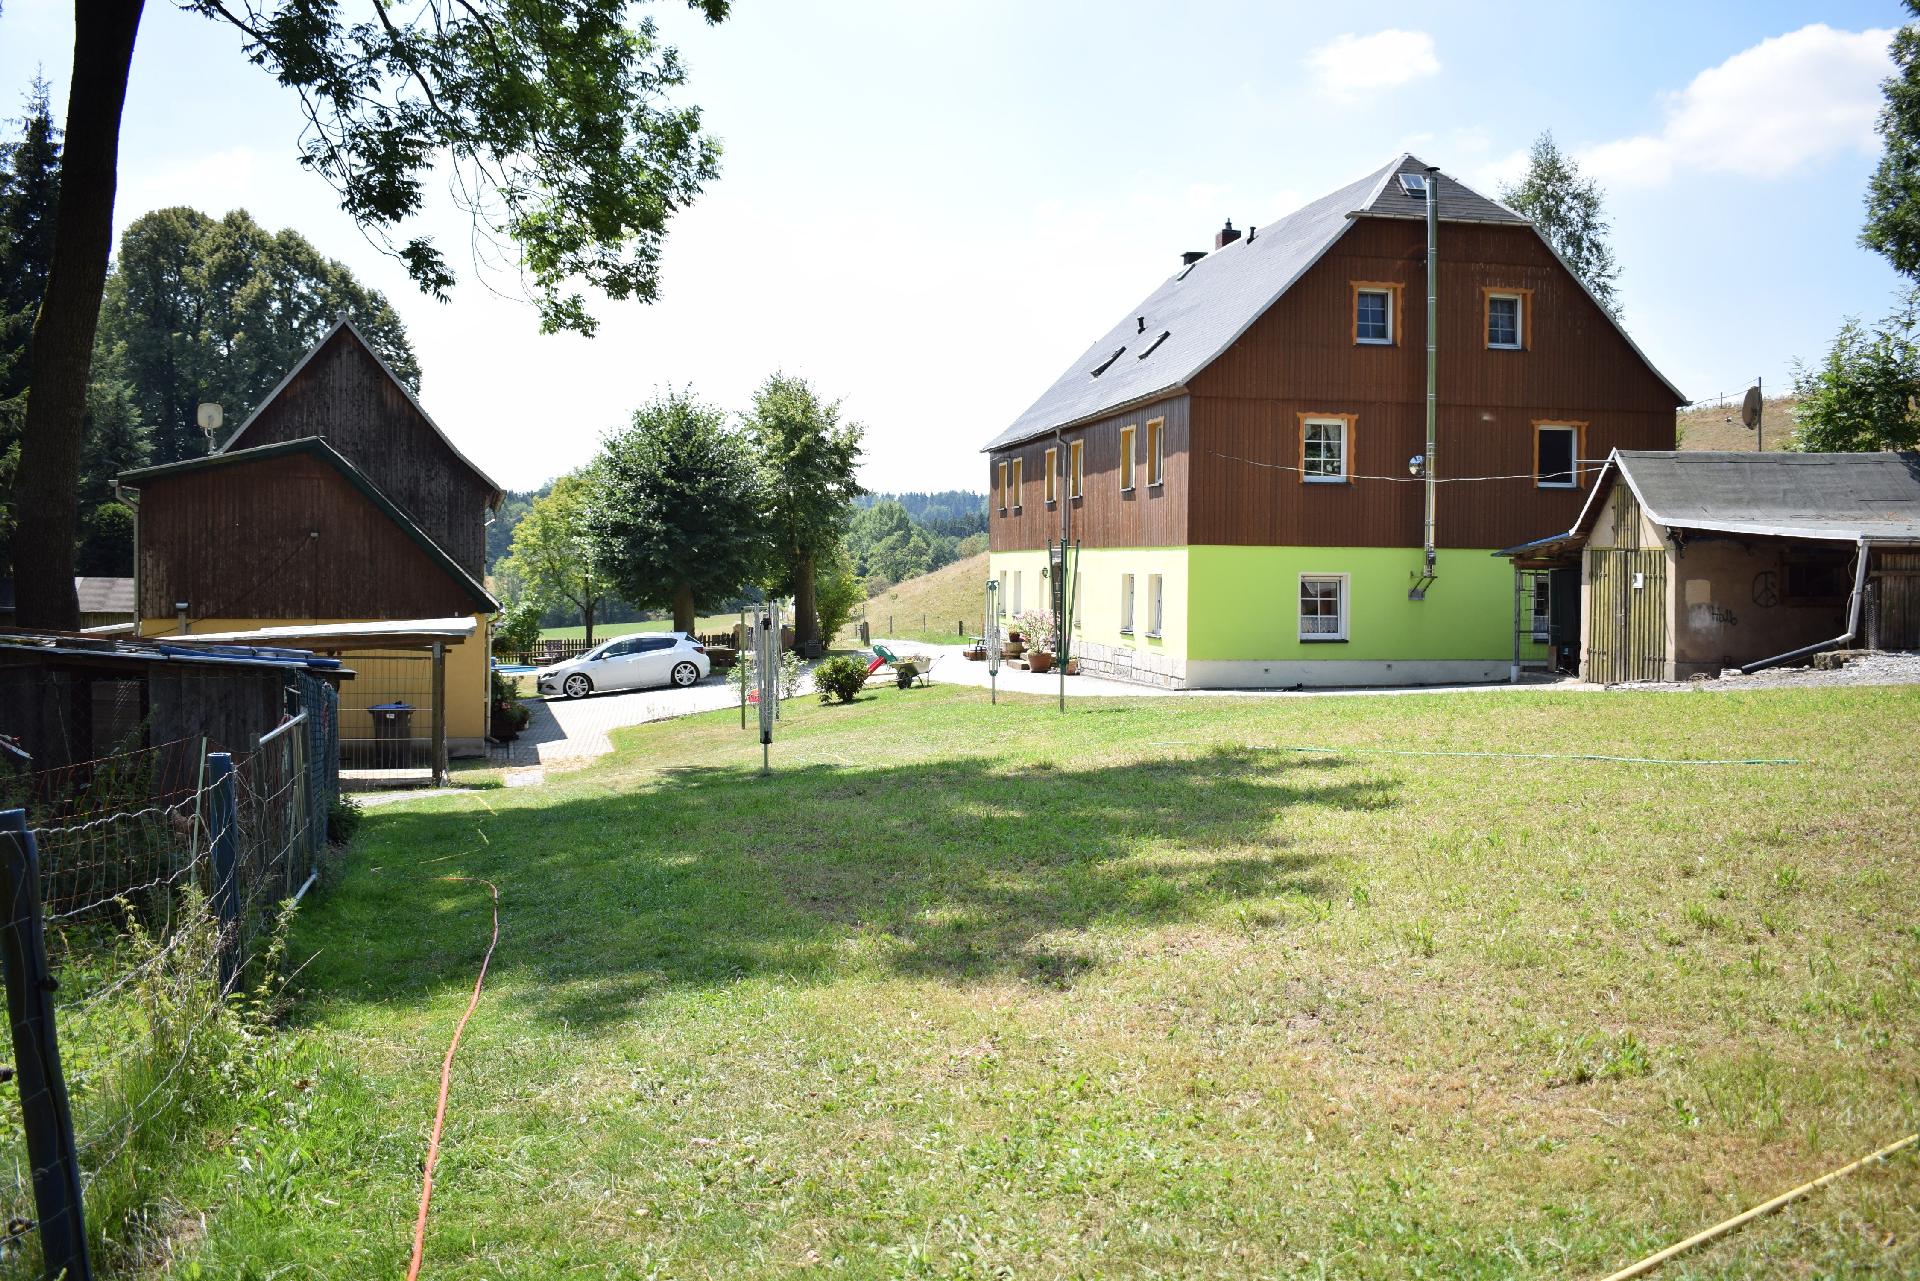 Ferienwohnung für 4 Personen ca. 50 m² i Ferienhaus in der Sächsische Schweiz